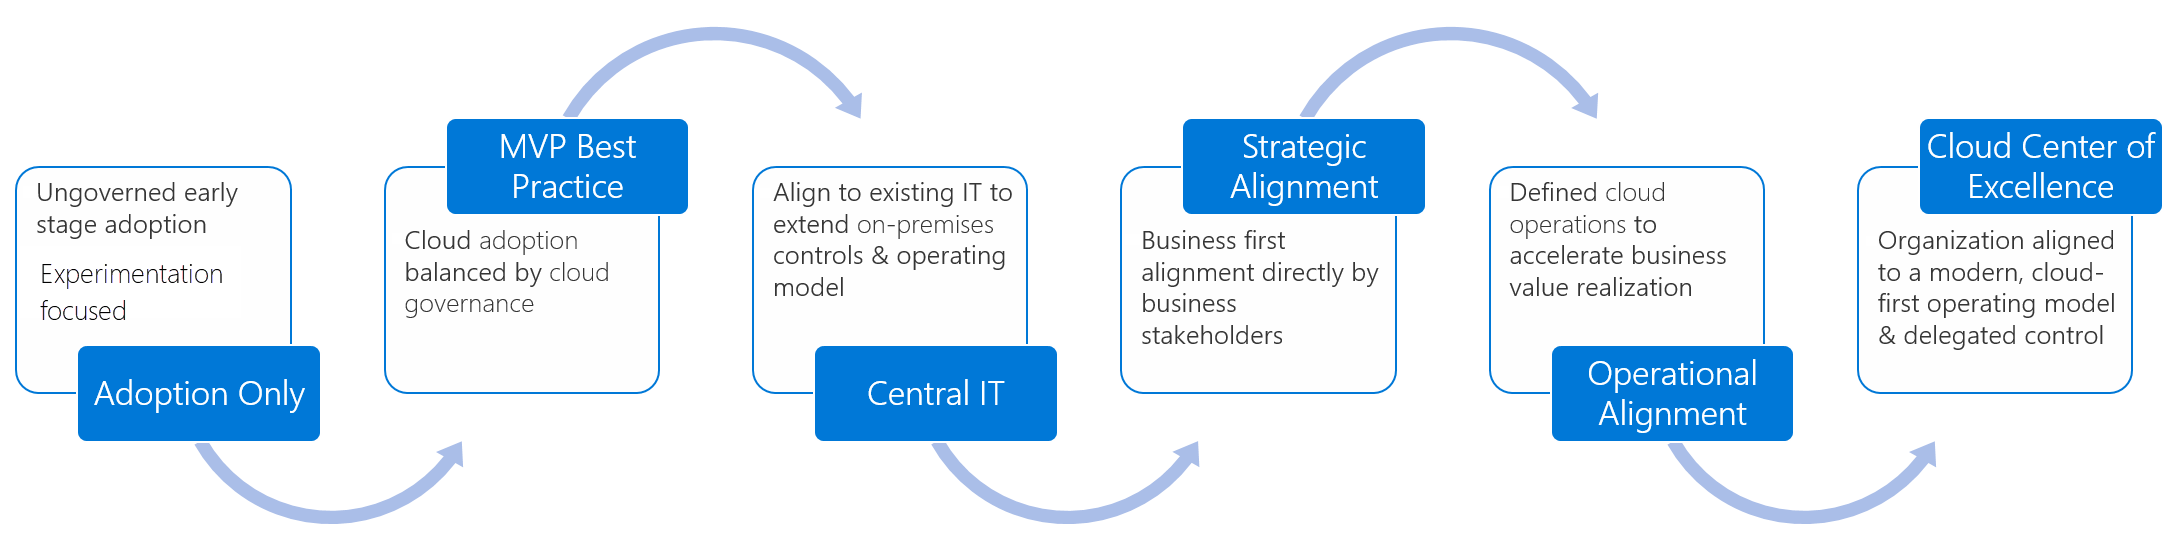 Diagramme montrant le cycle de maturité de l’organisation.